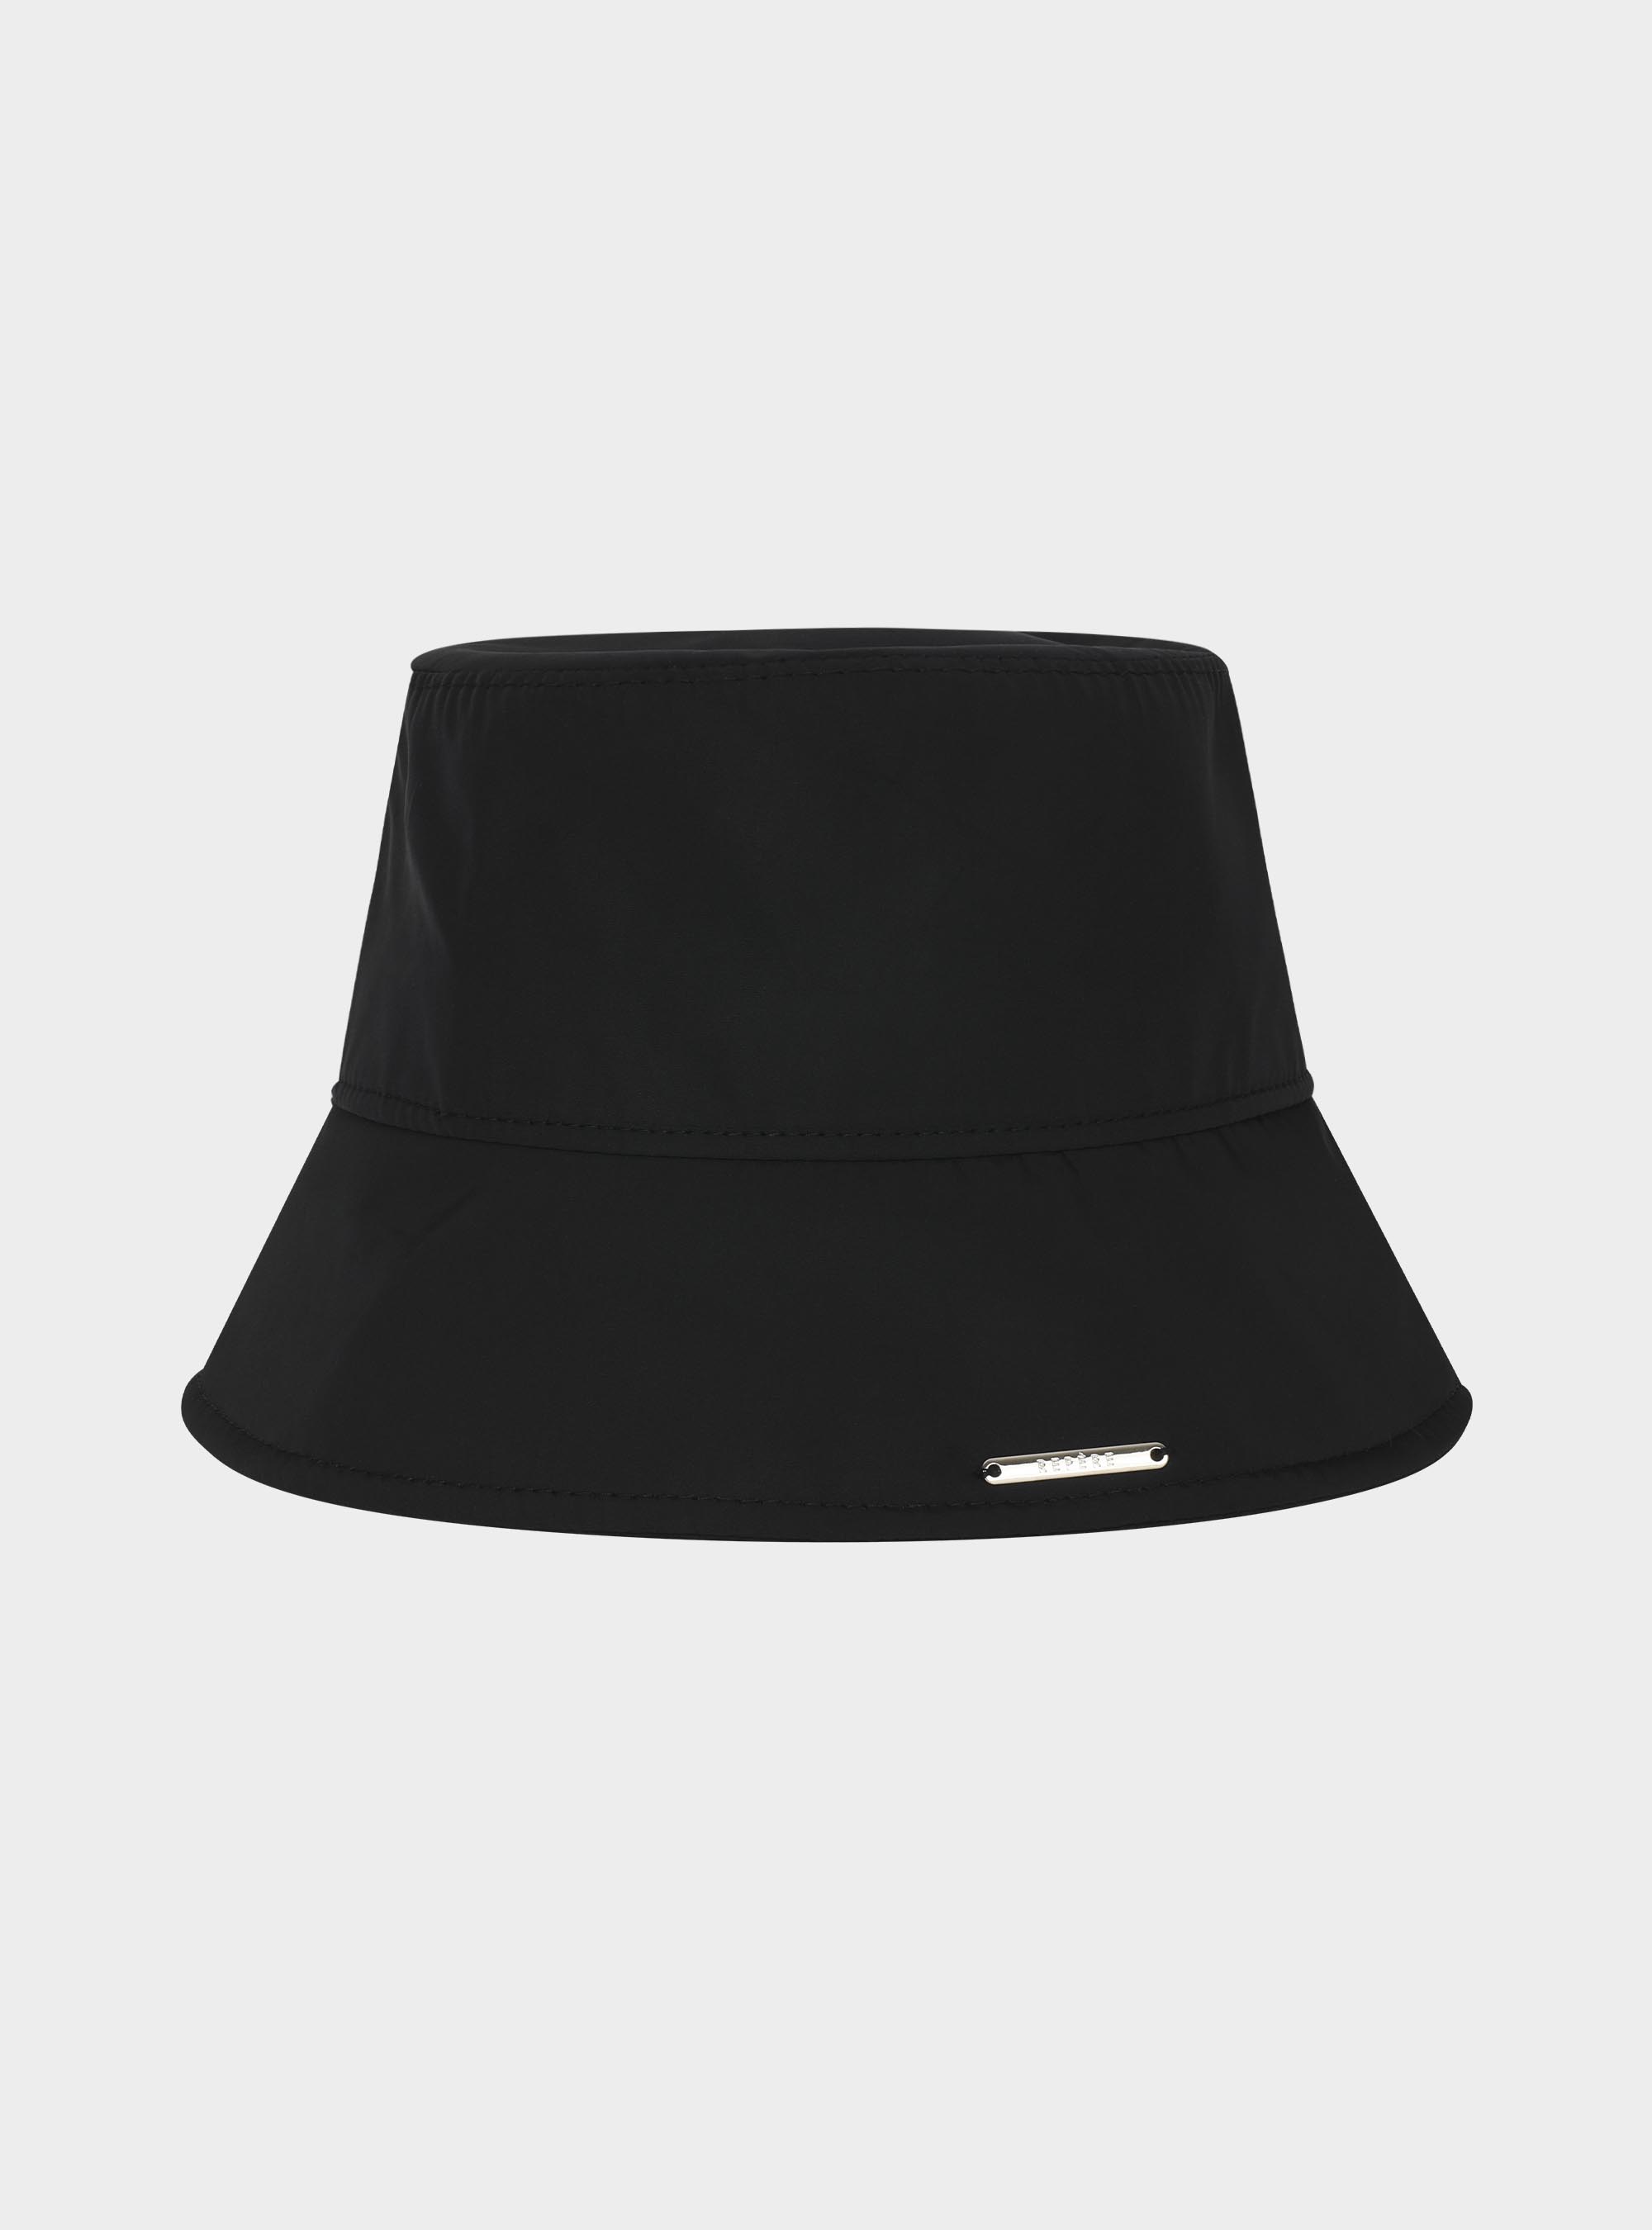 엘고트 나일론 버킷햇 블랙  Elgort nylon bucket hat black